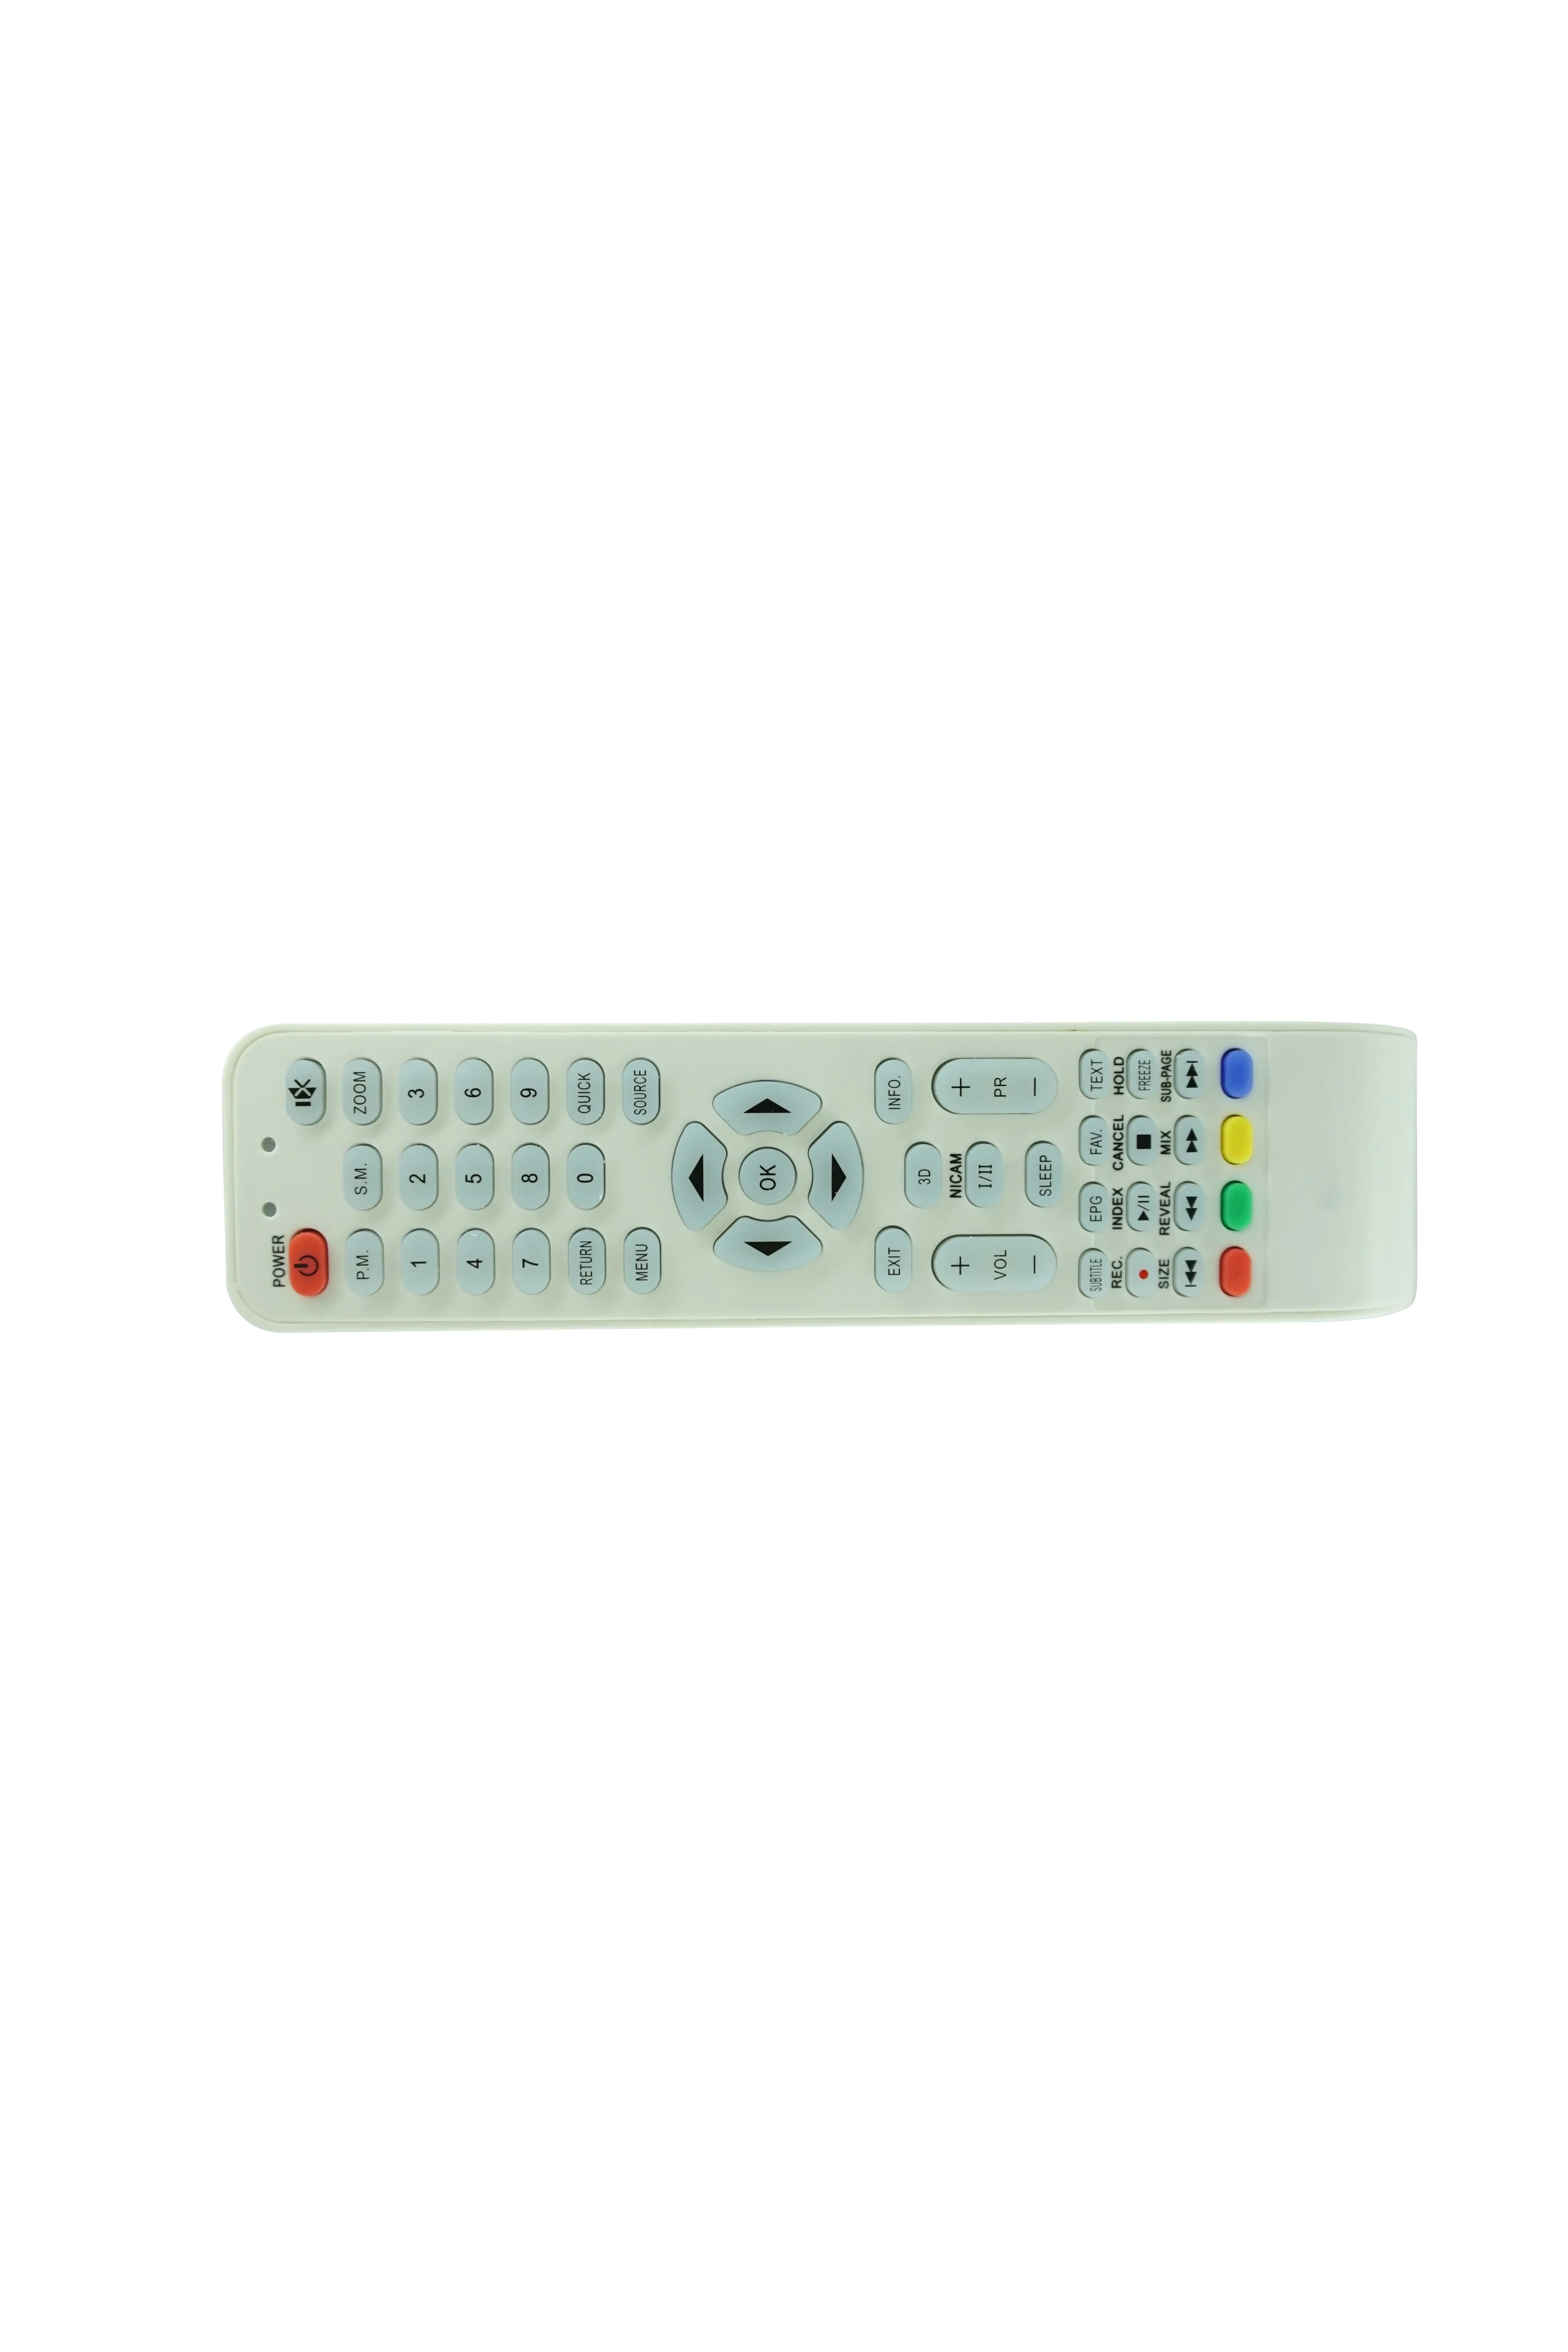 Controle remoto para Horizont 32LE5511DR 32LE5571DR Smart LED LCD HDTV TV